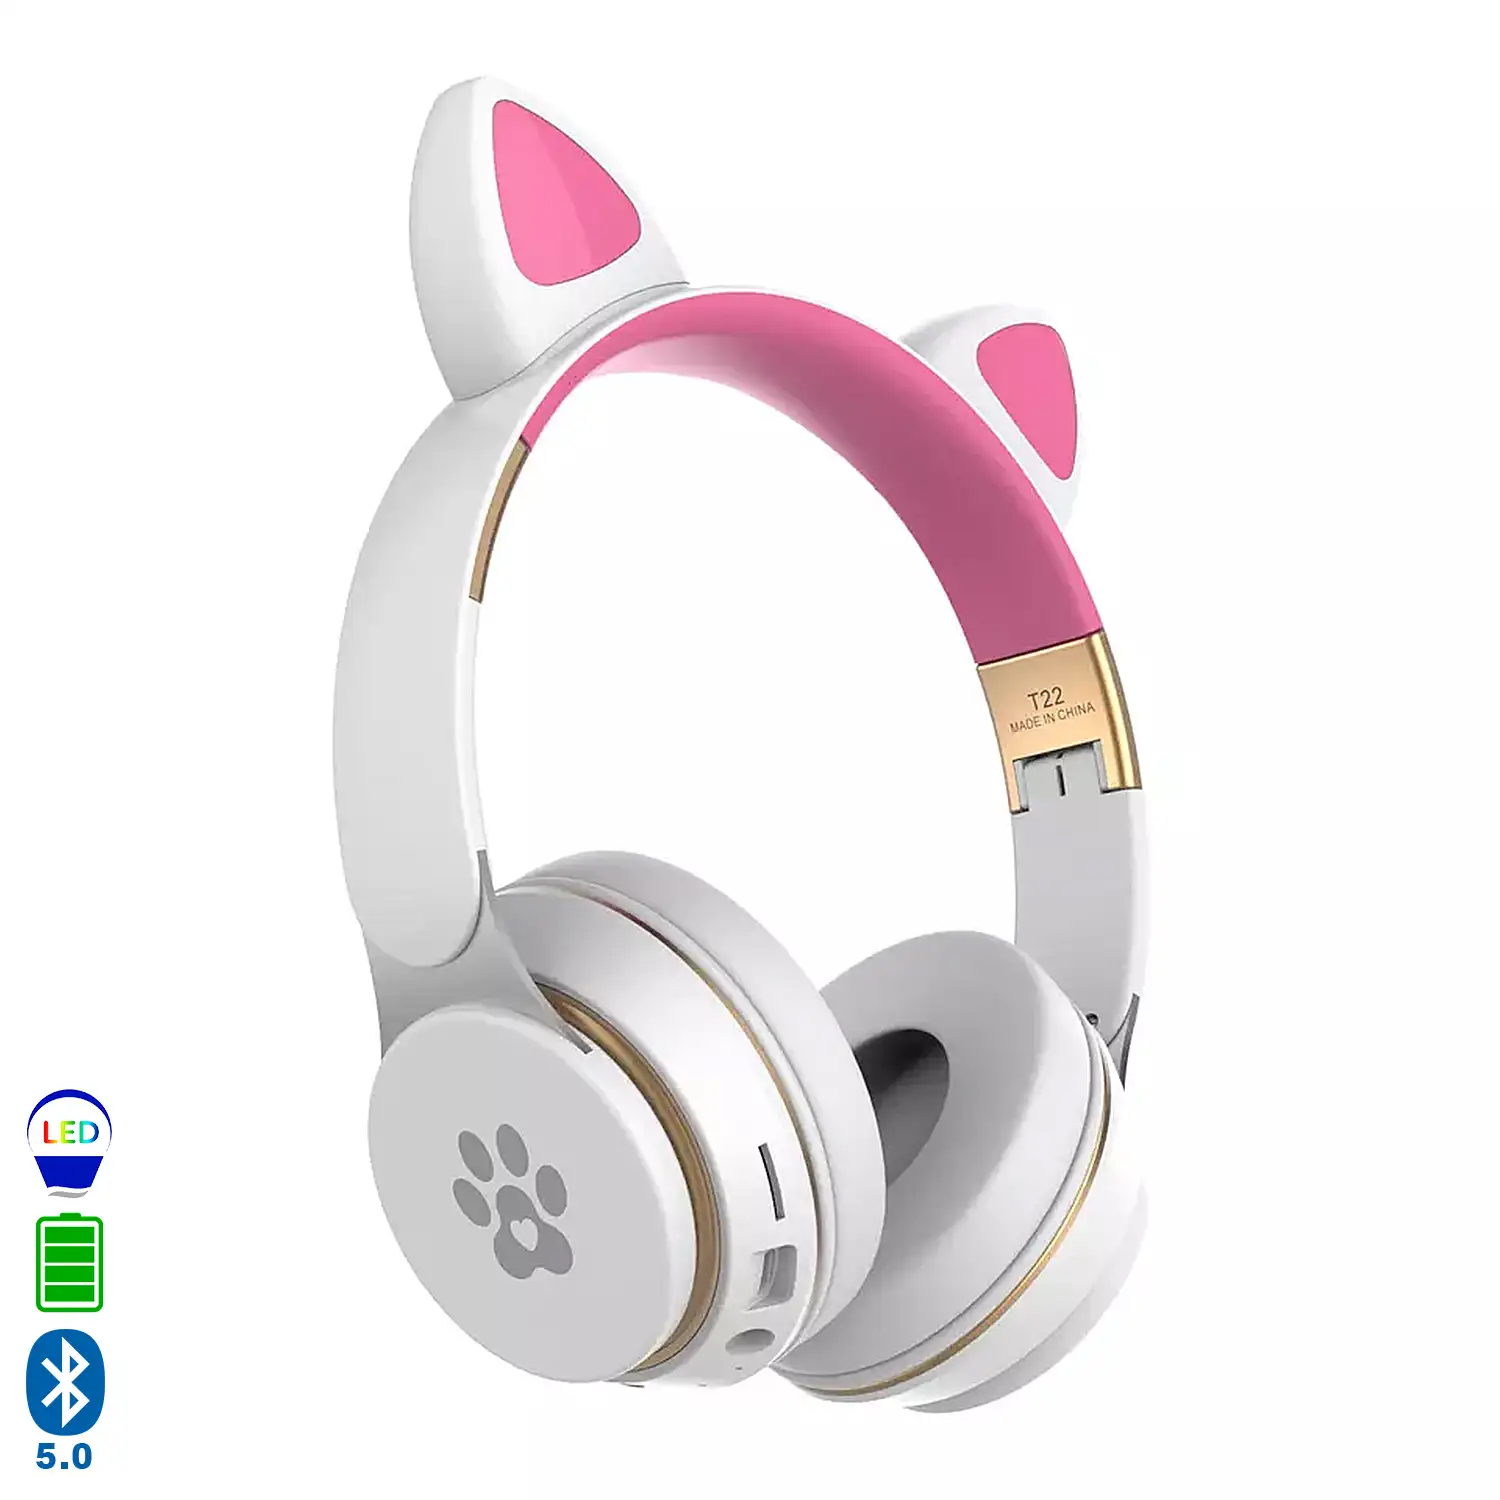 Cascos auriculares infantiles T22 Bluetooth 5.0, con luces led RGB. Supraaurales, lector de tarjetas micro SD, conexión para cable minijack.